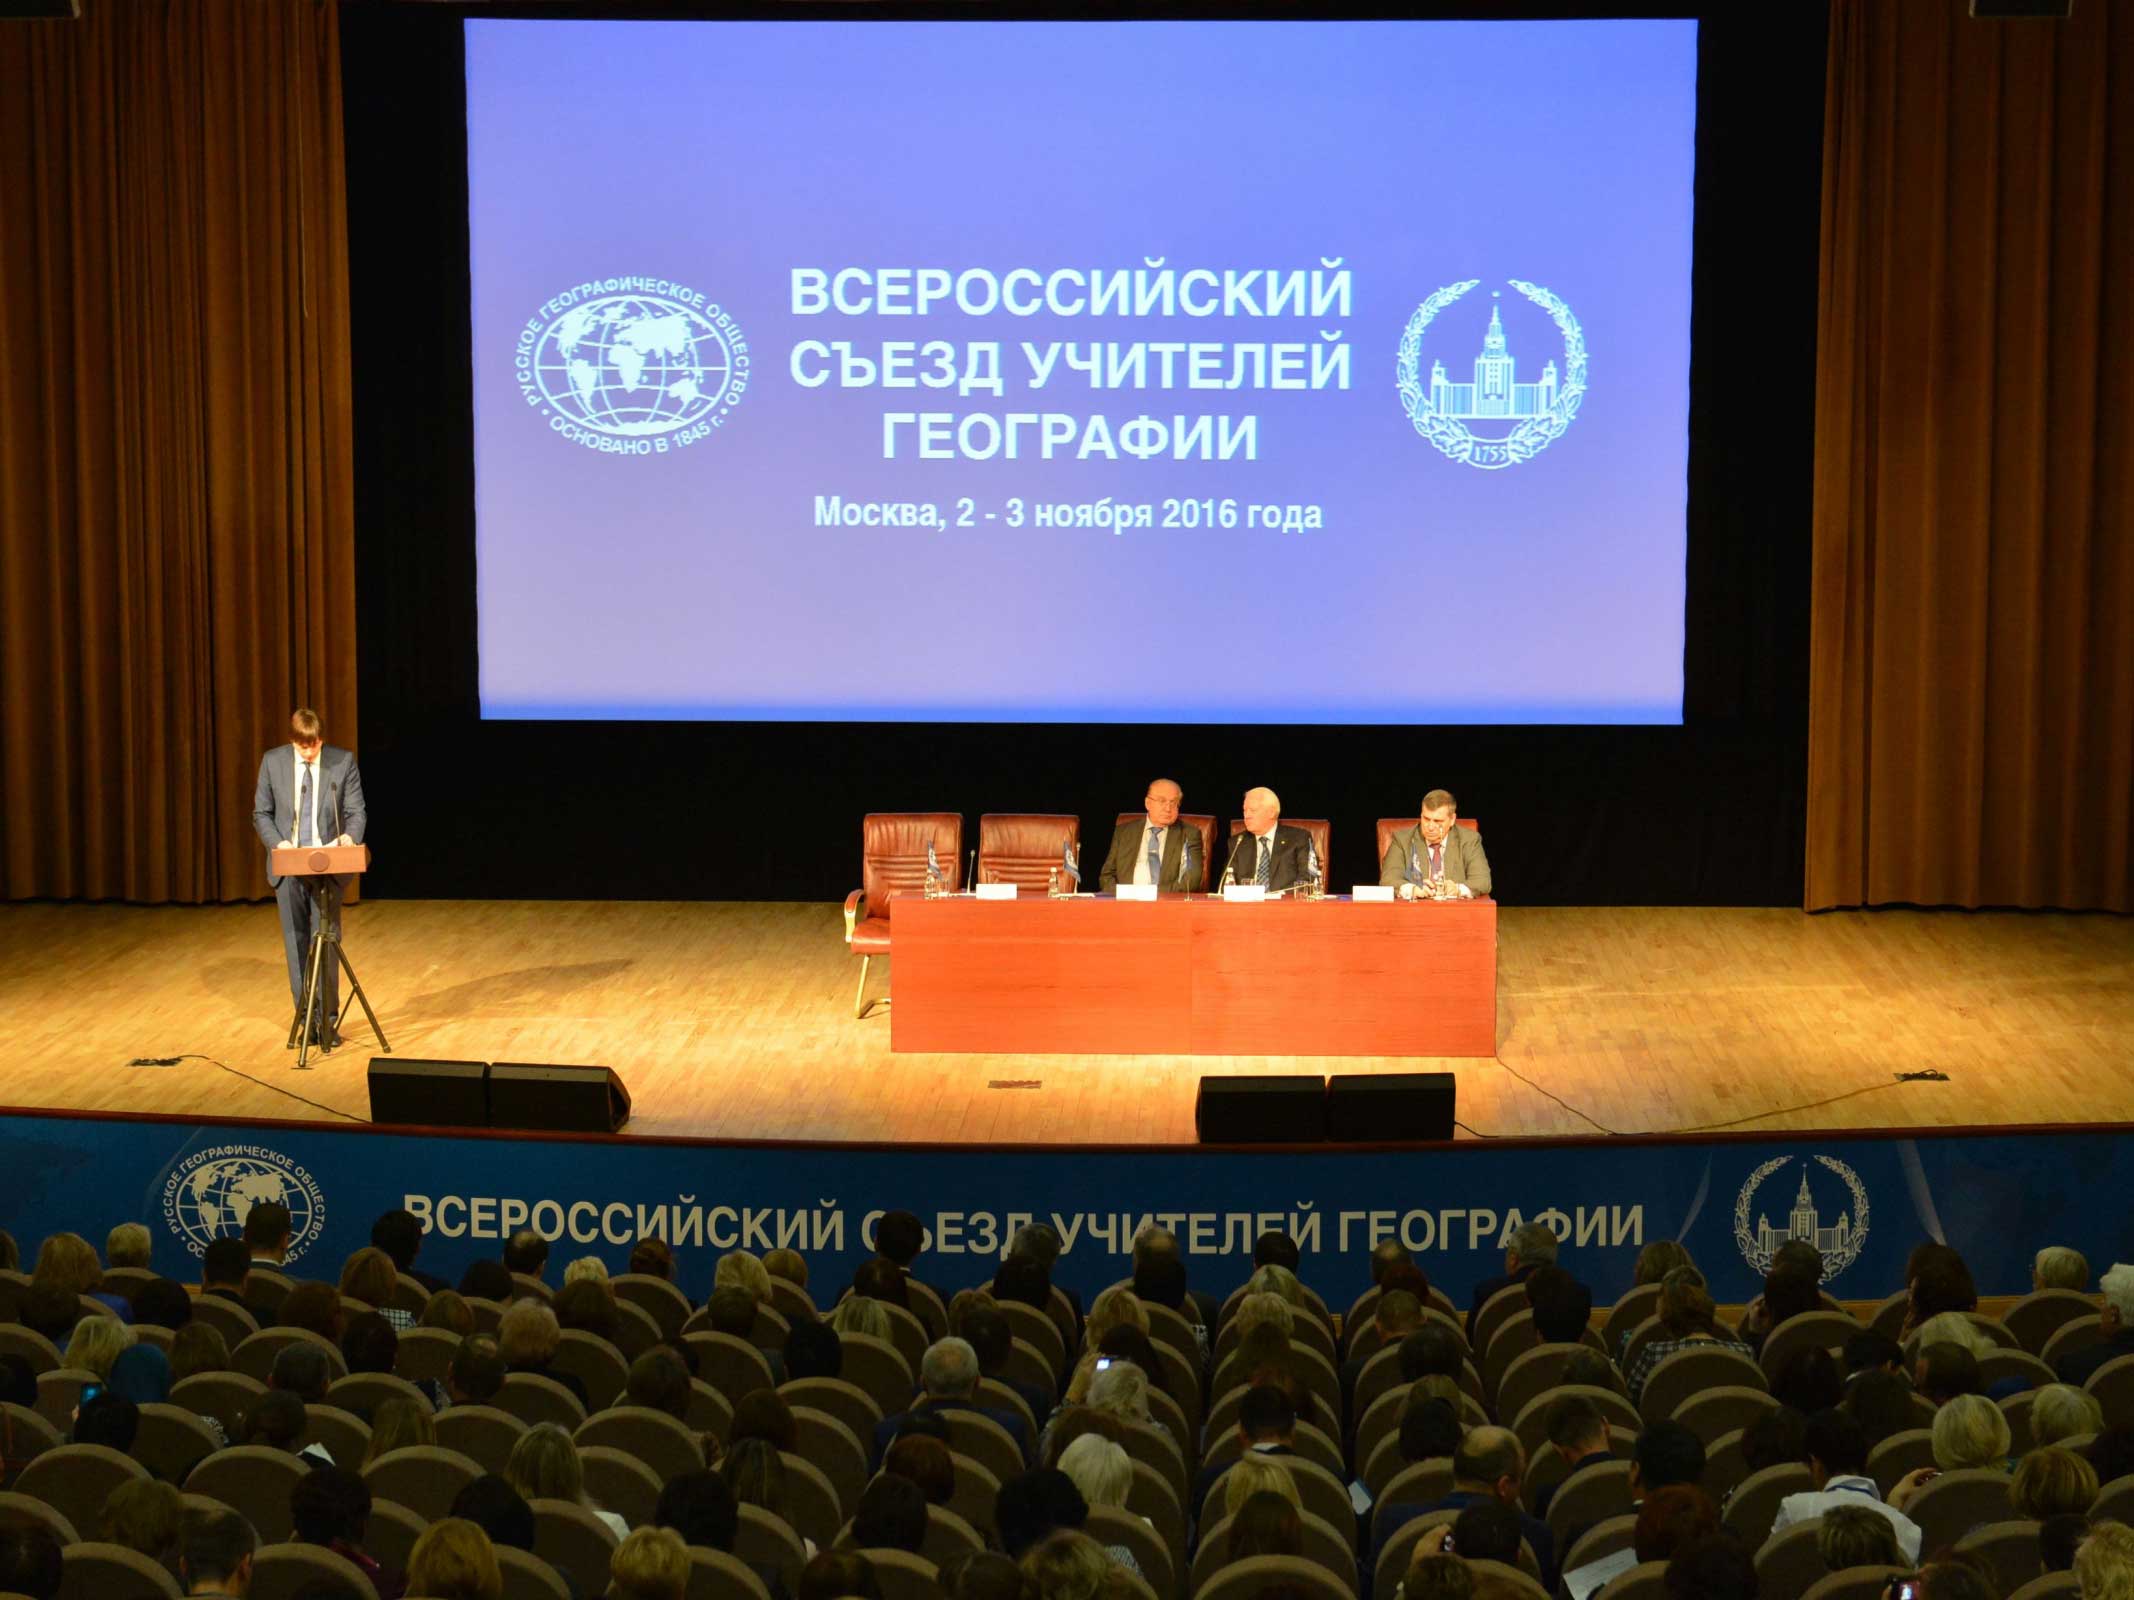 Сотрудники Мининского университета побывали на II Всероссийском съезде учителей географии в Москве